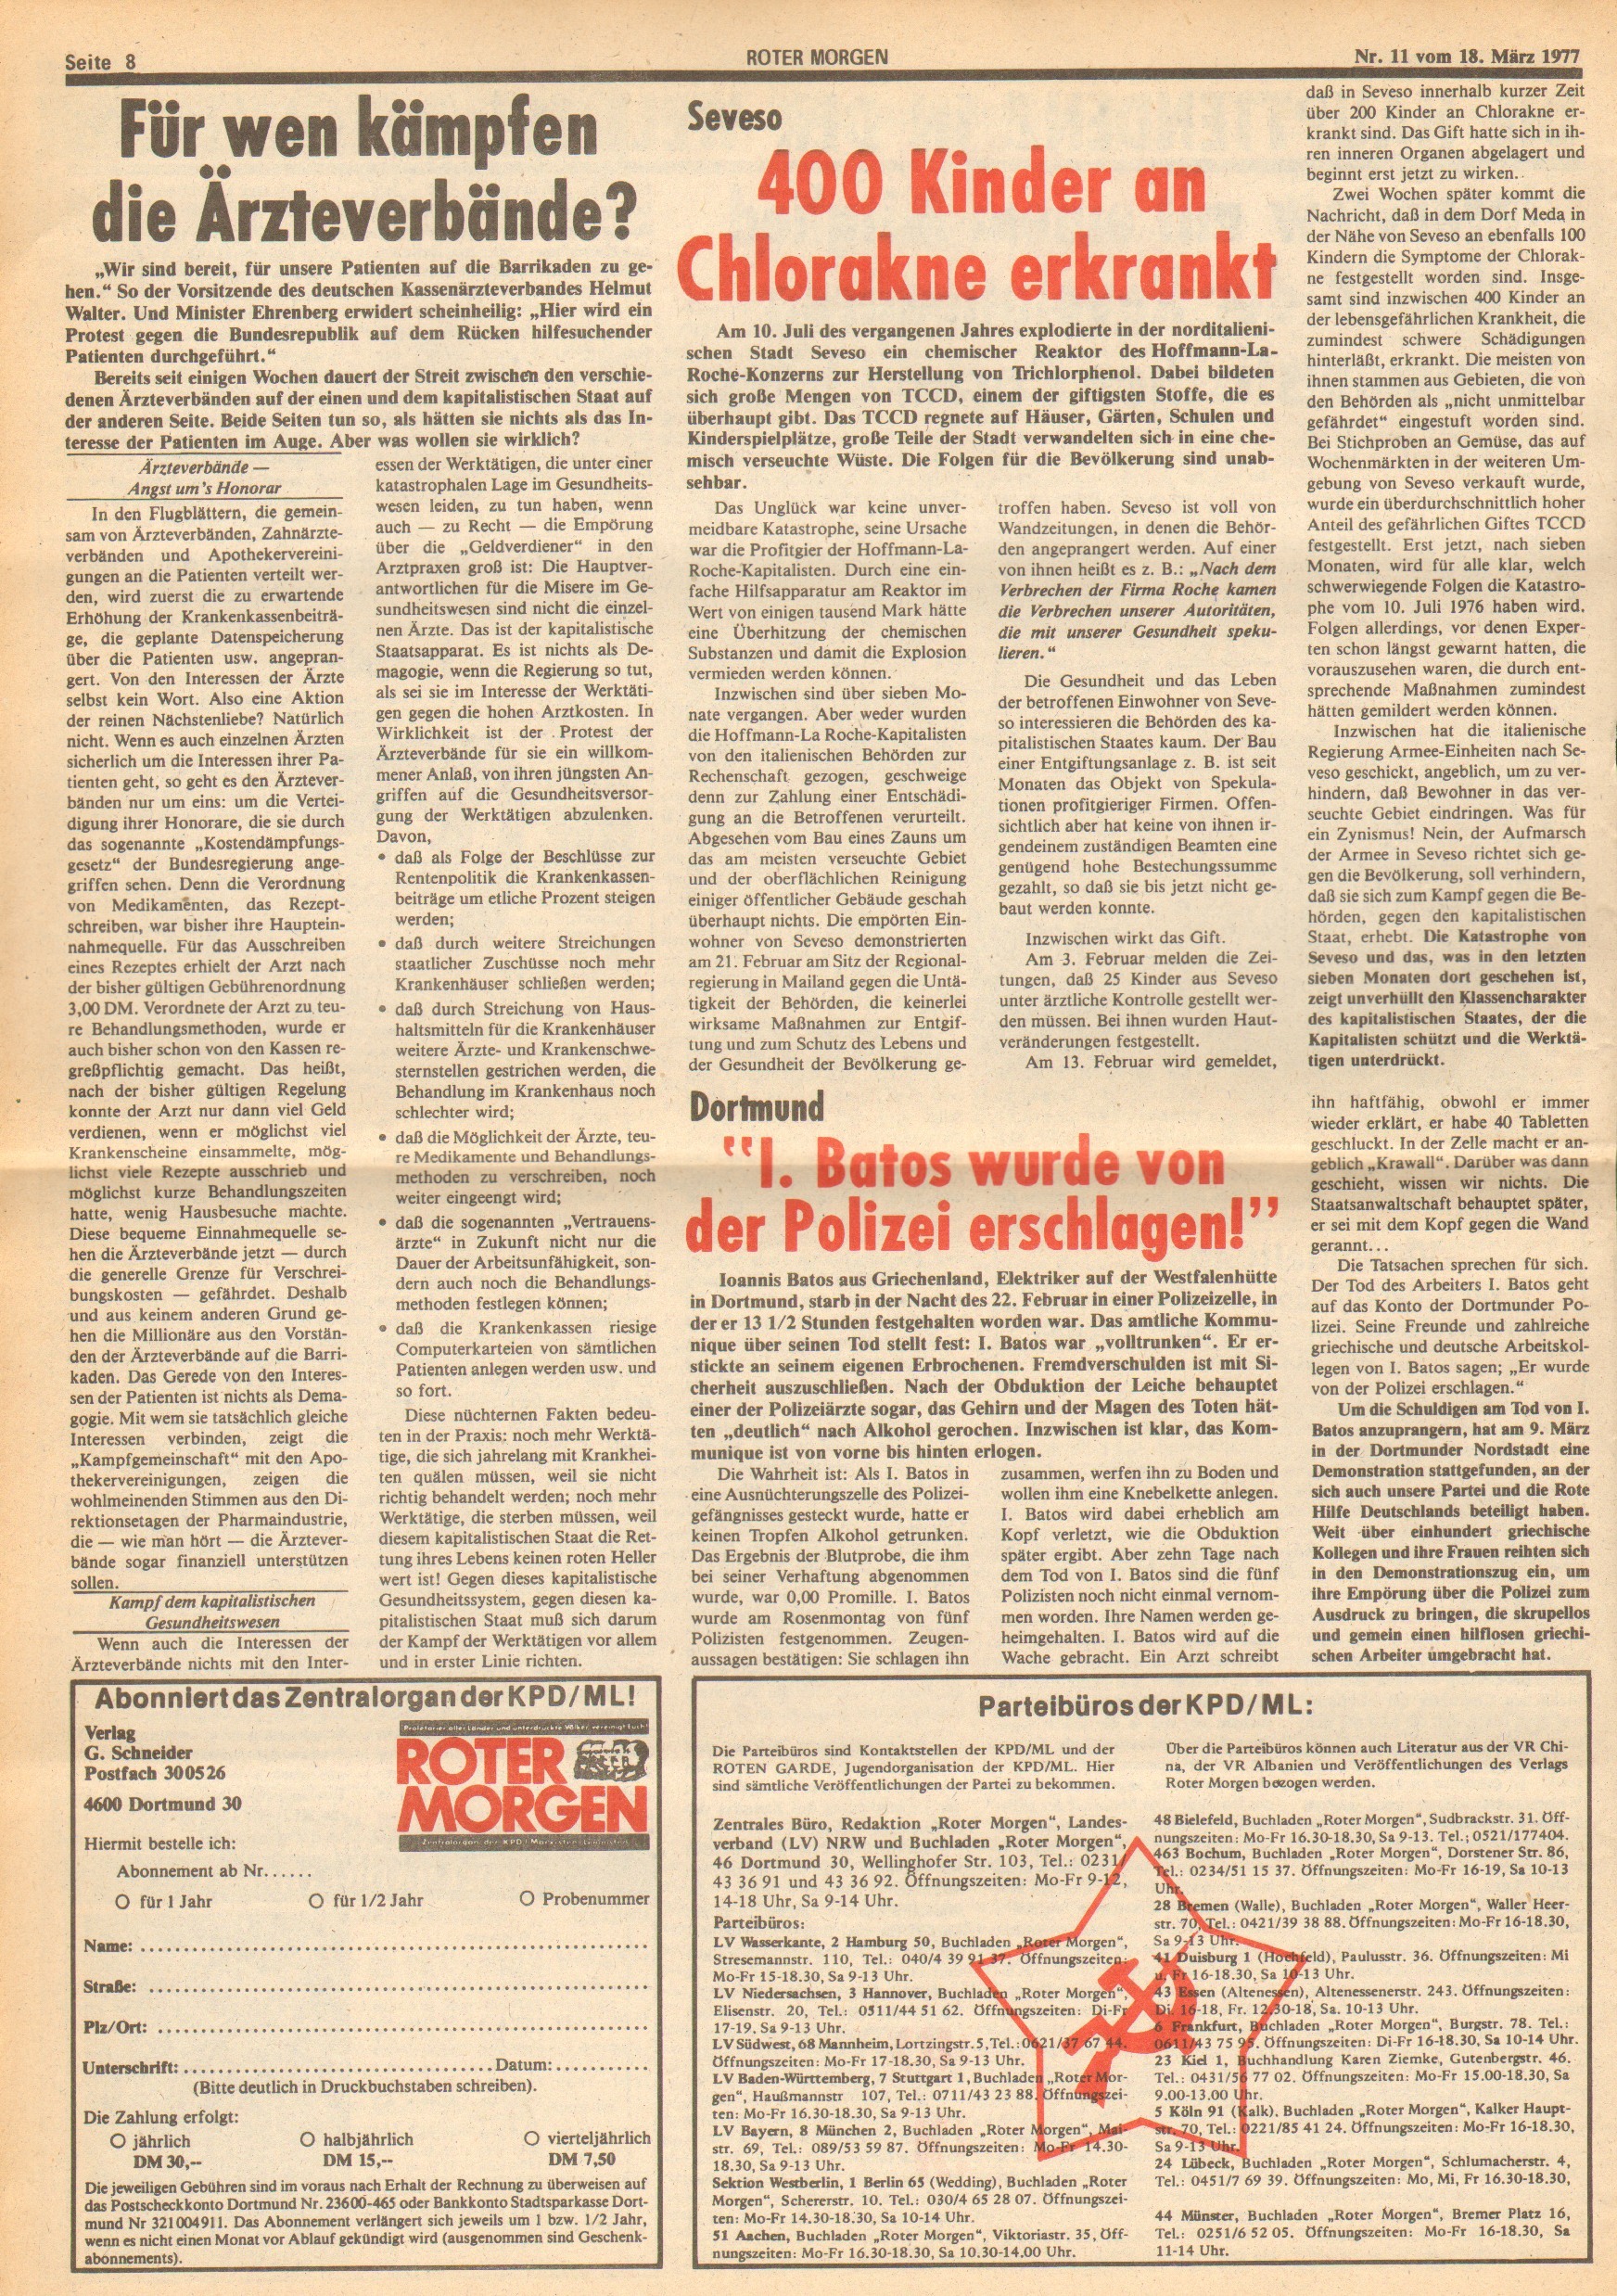 Roter Morgen, 11. Jg., 18. März 1977, Nr. 11, Seite 8